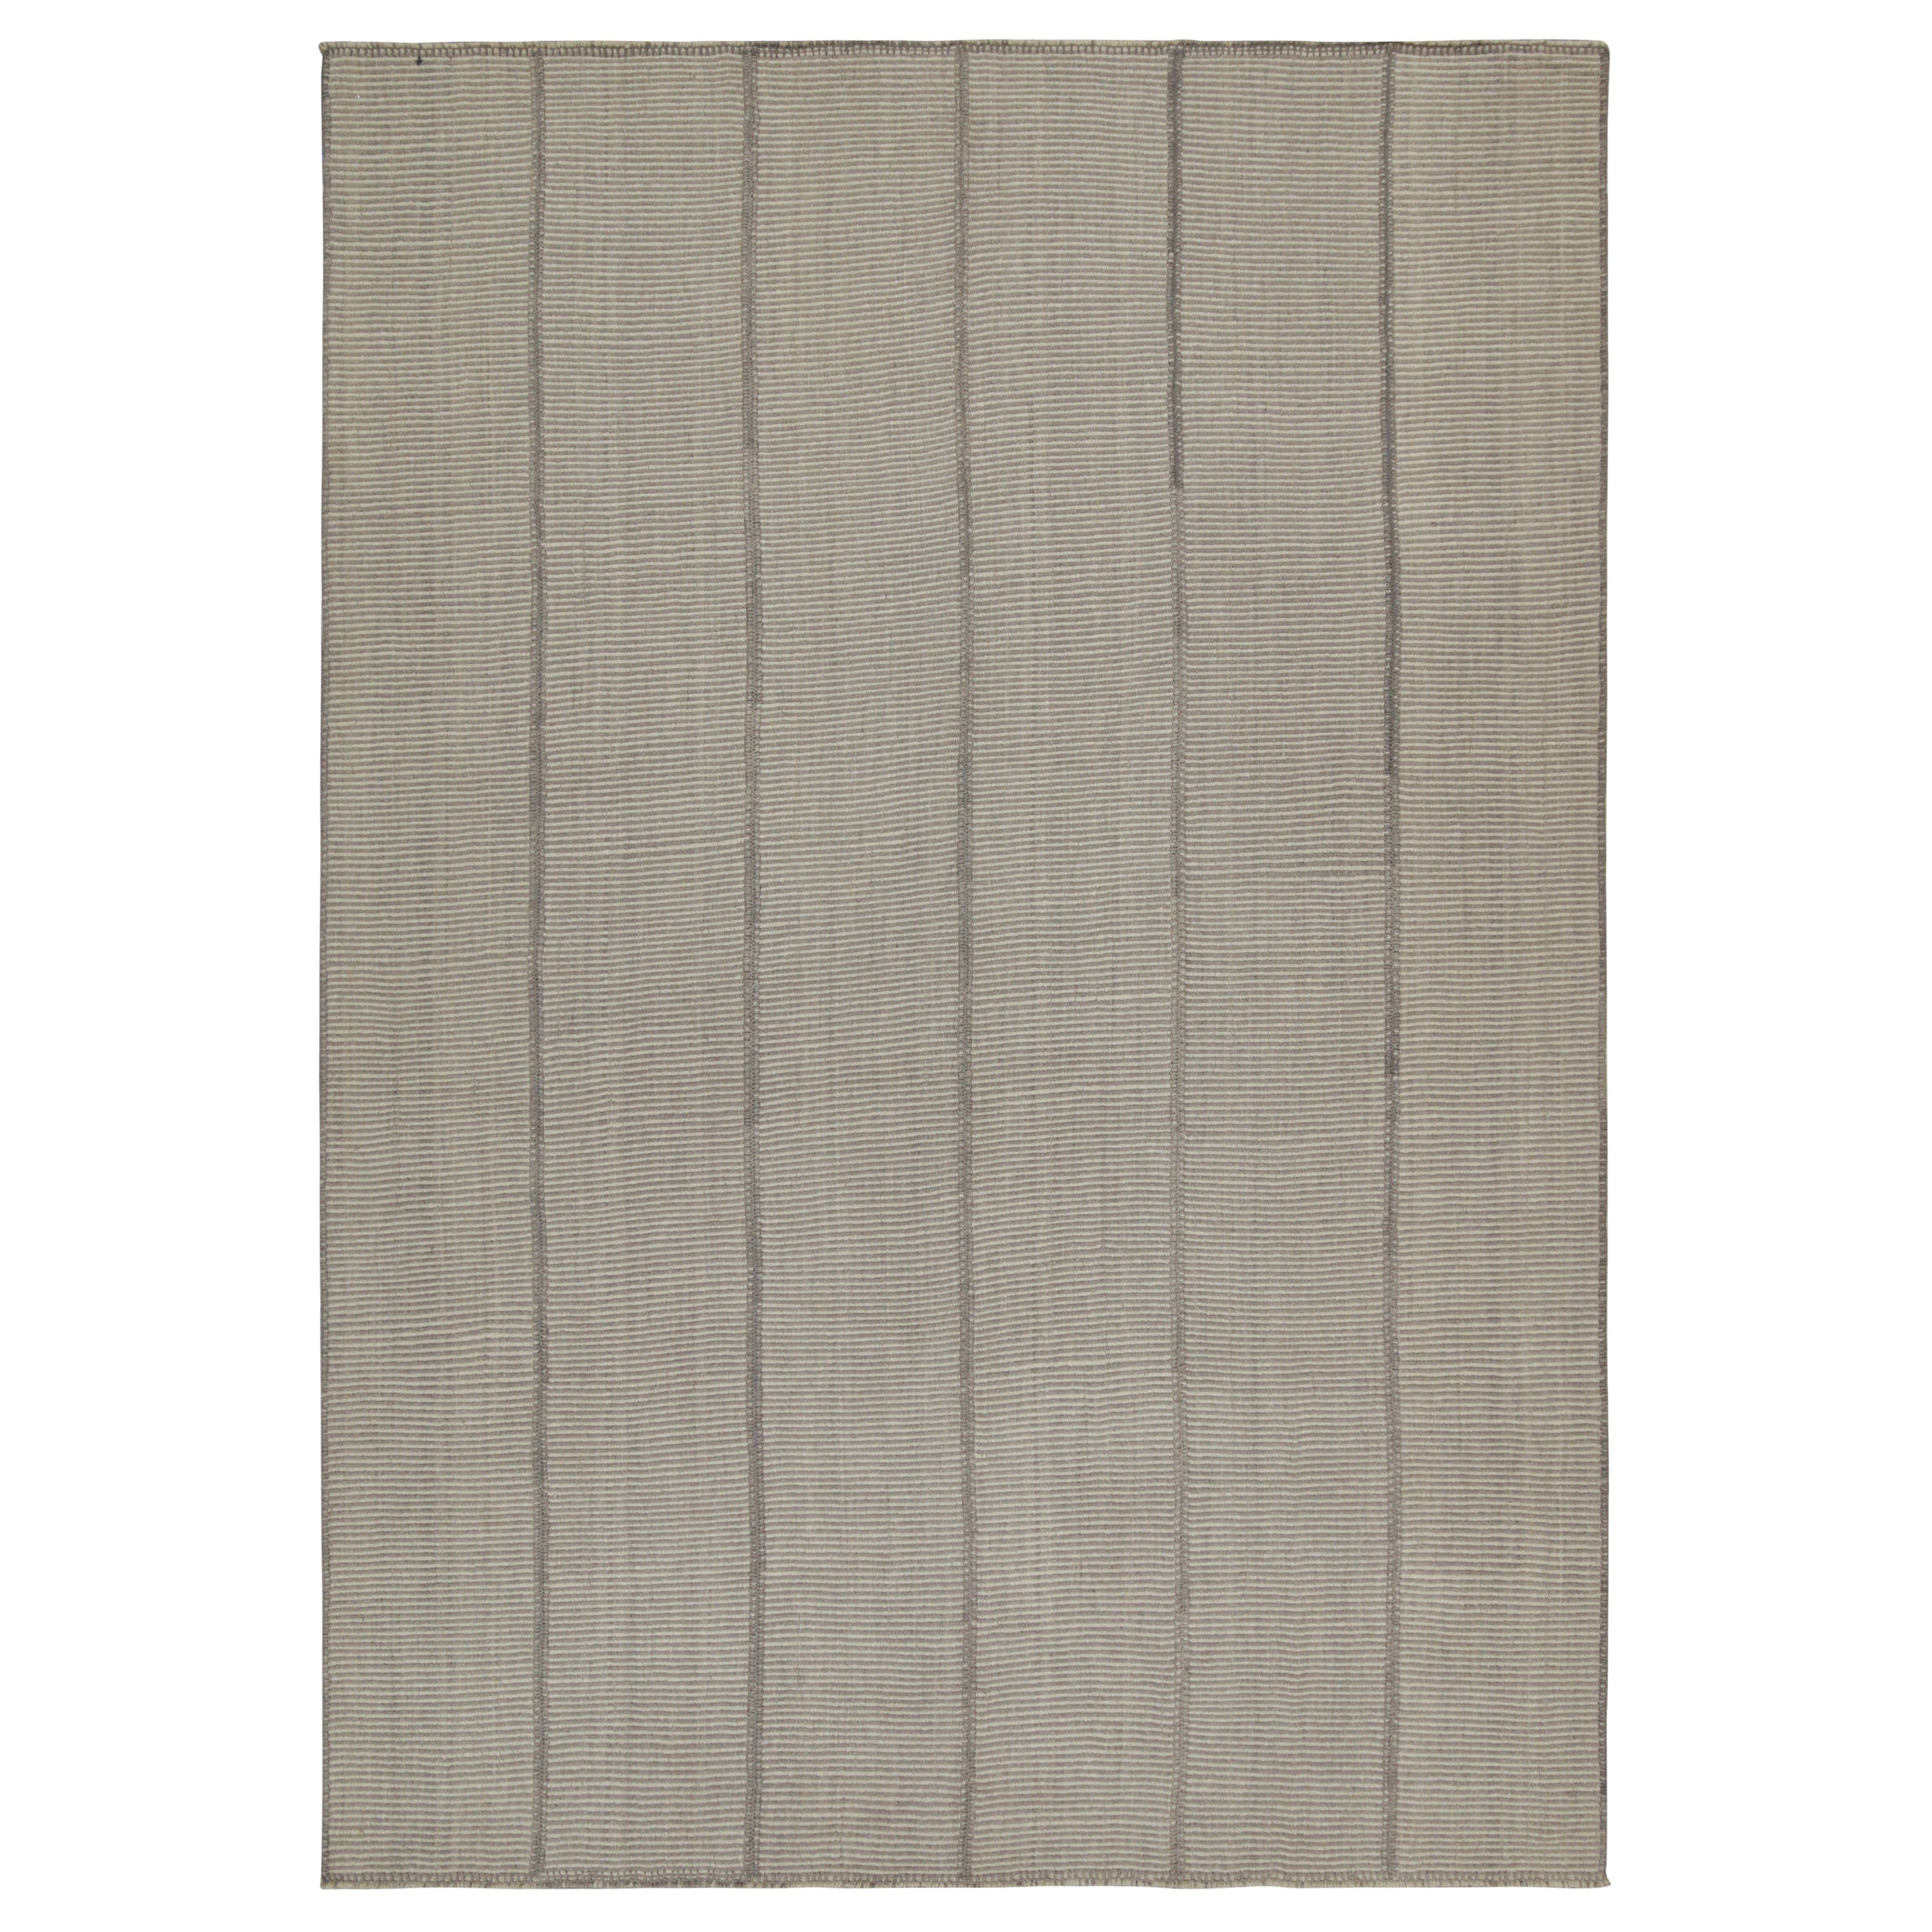 Rug & Kilim’s Contemporary Kilim in Gray and Cream Stripes